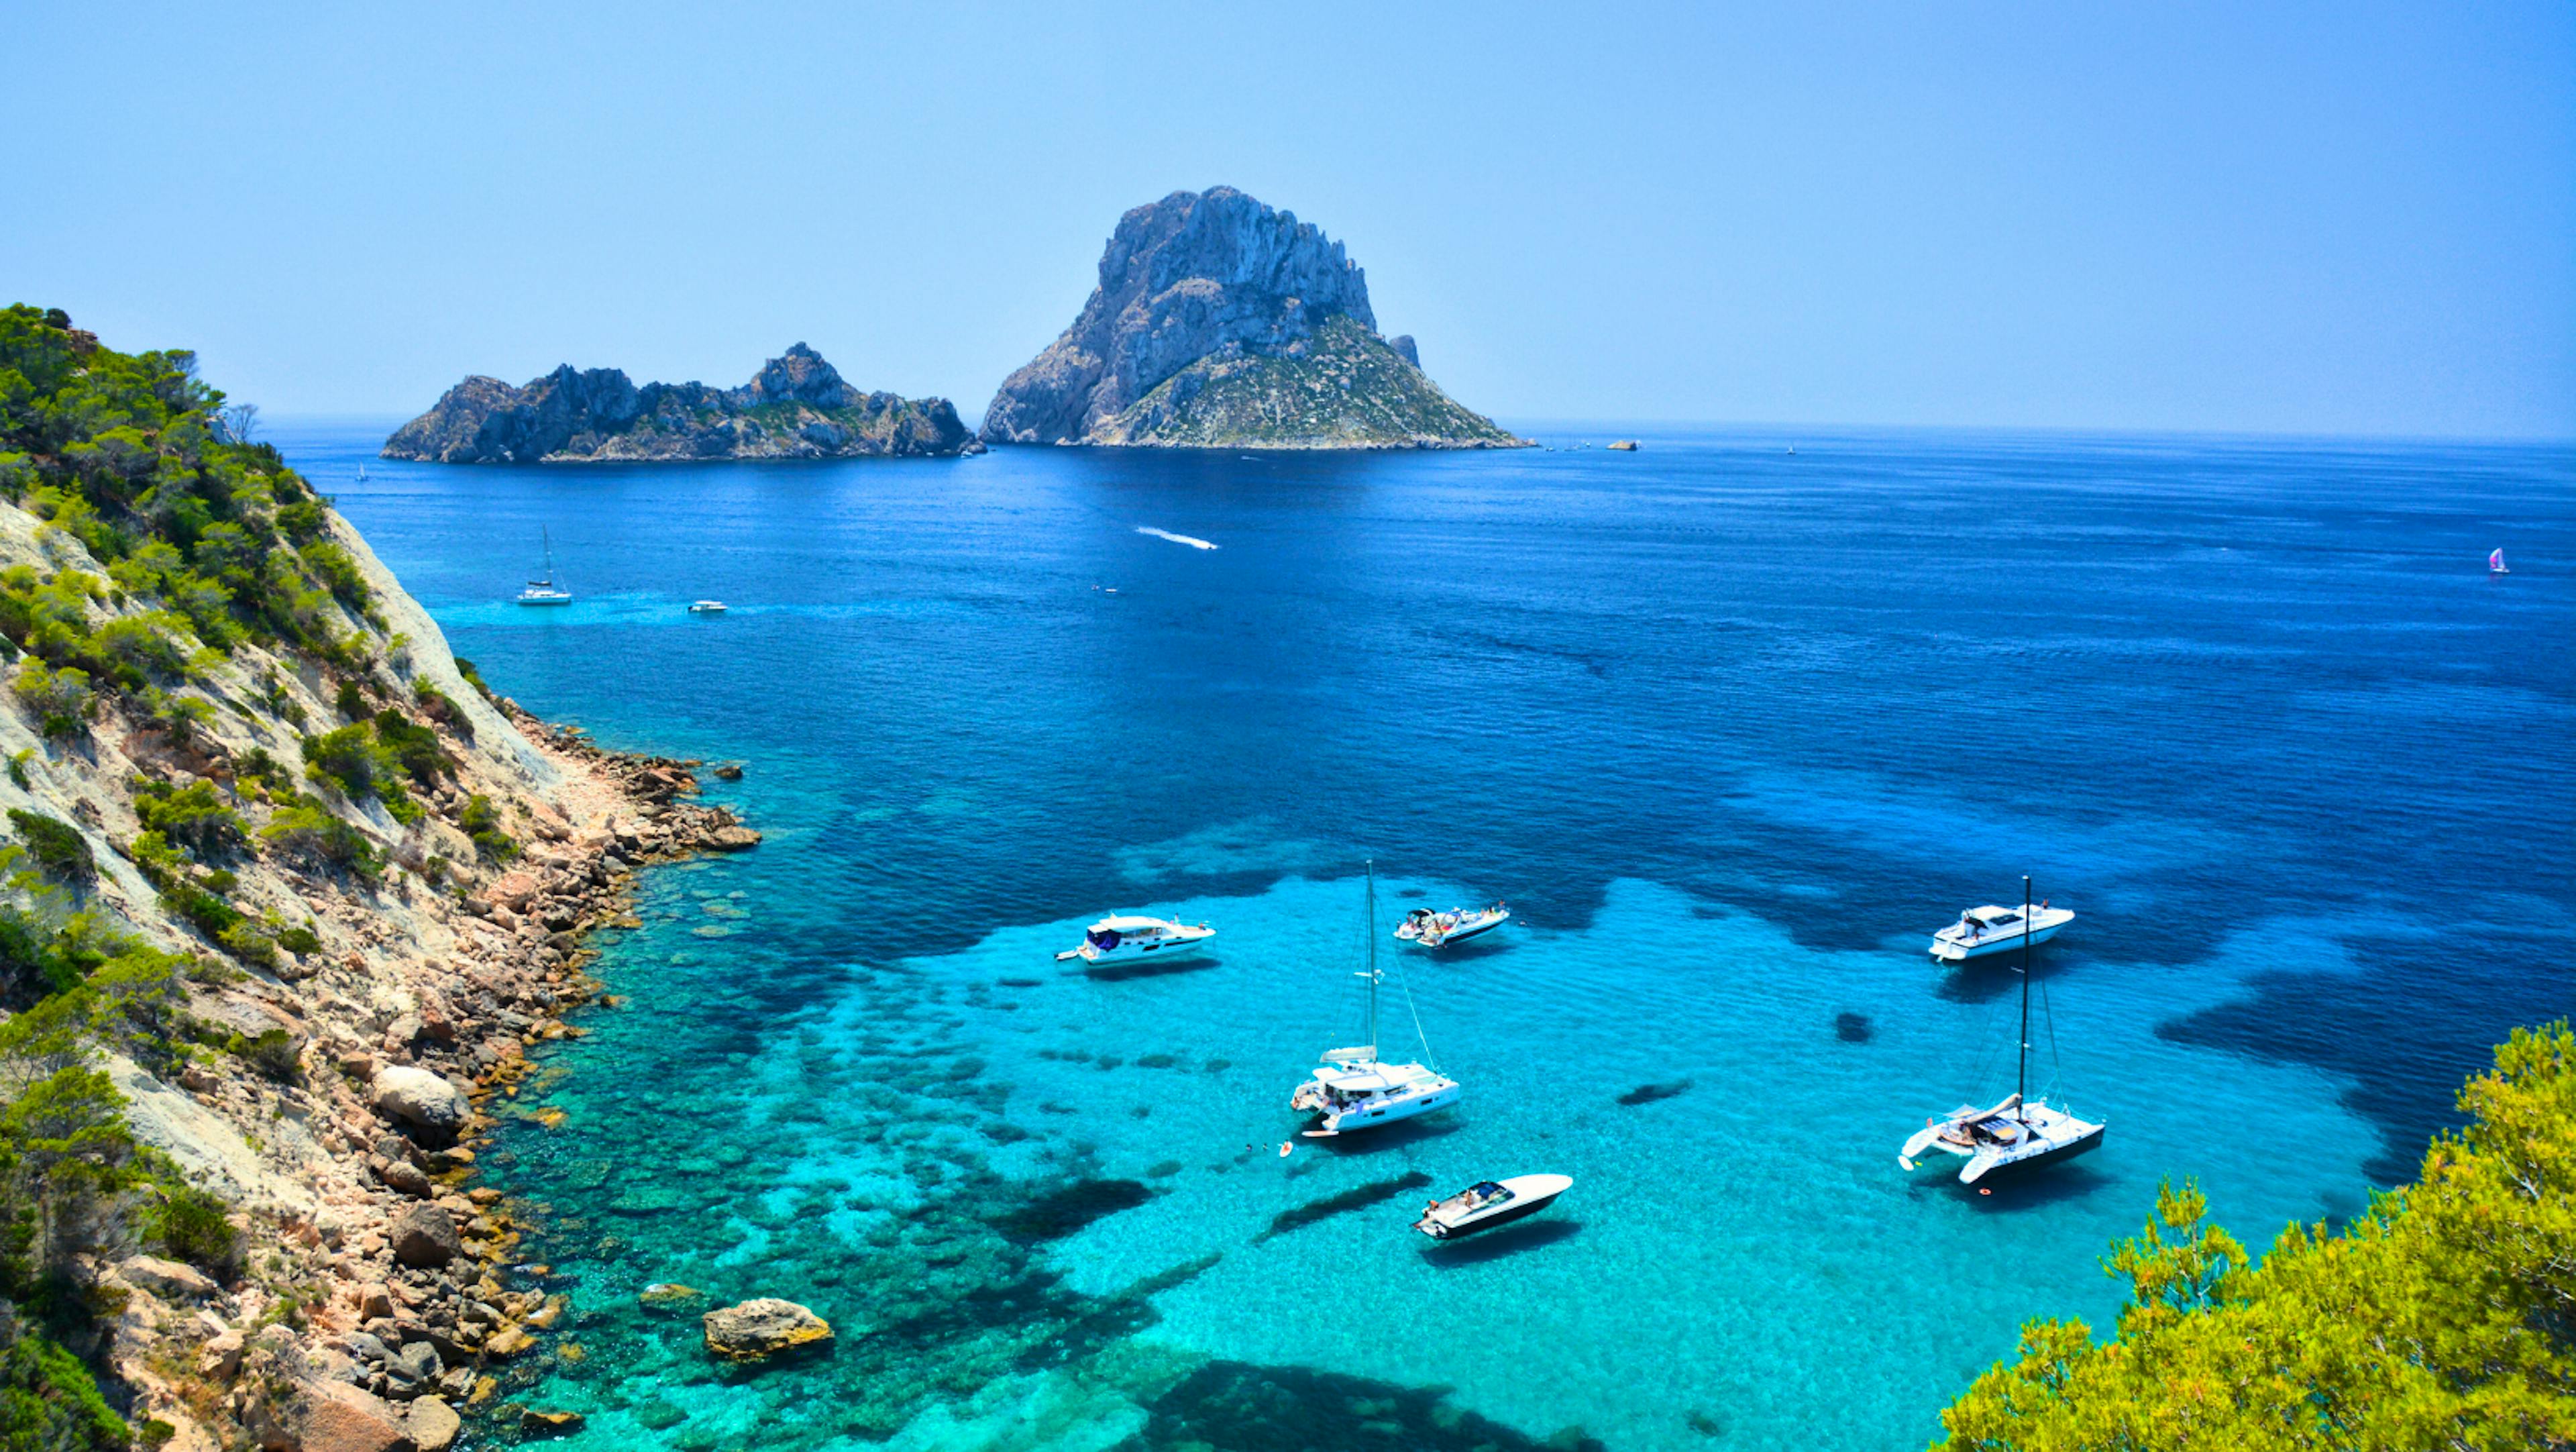 Yachtcharter Ibiza: Eine 7-tägige Segelroute